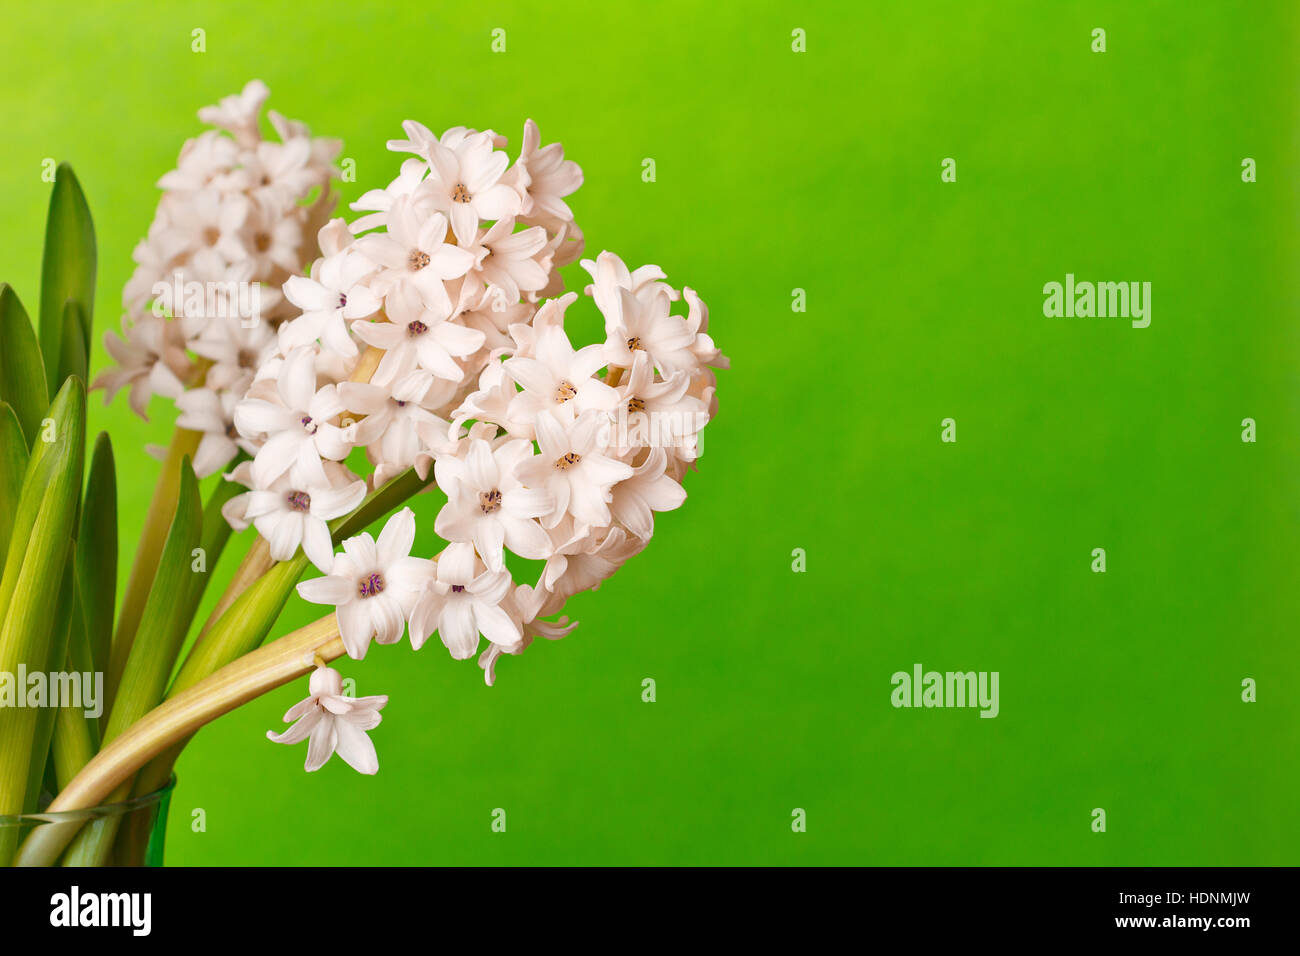 Drei leichte rosa Hyazinthe Blumen auf eine lebendige Grünfläche Hintergrund, Kopie oder Text, Vorlage für retro Geschenk-Gutscheine Stockfoto